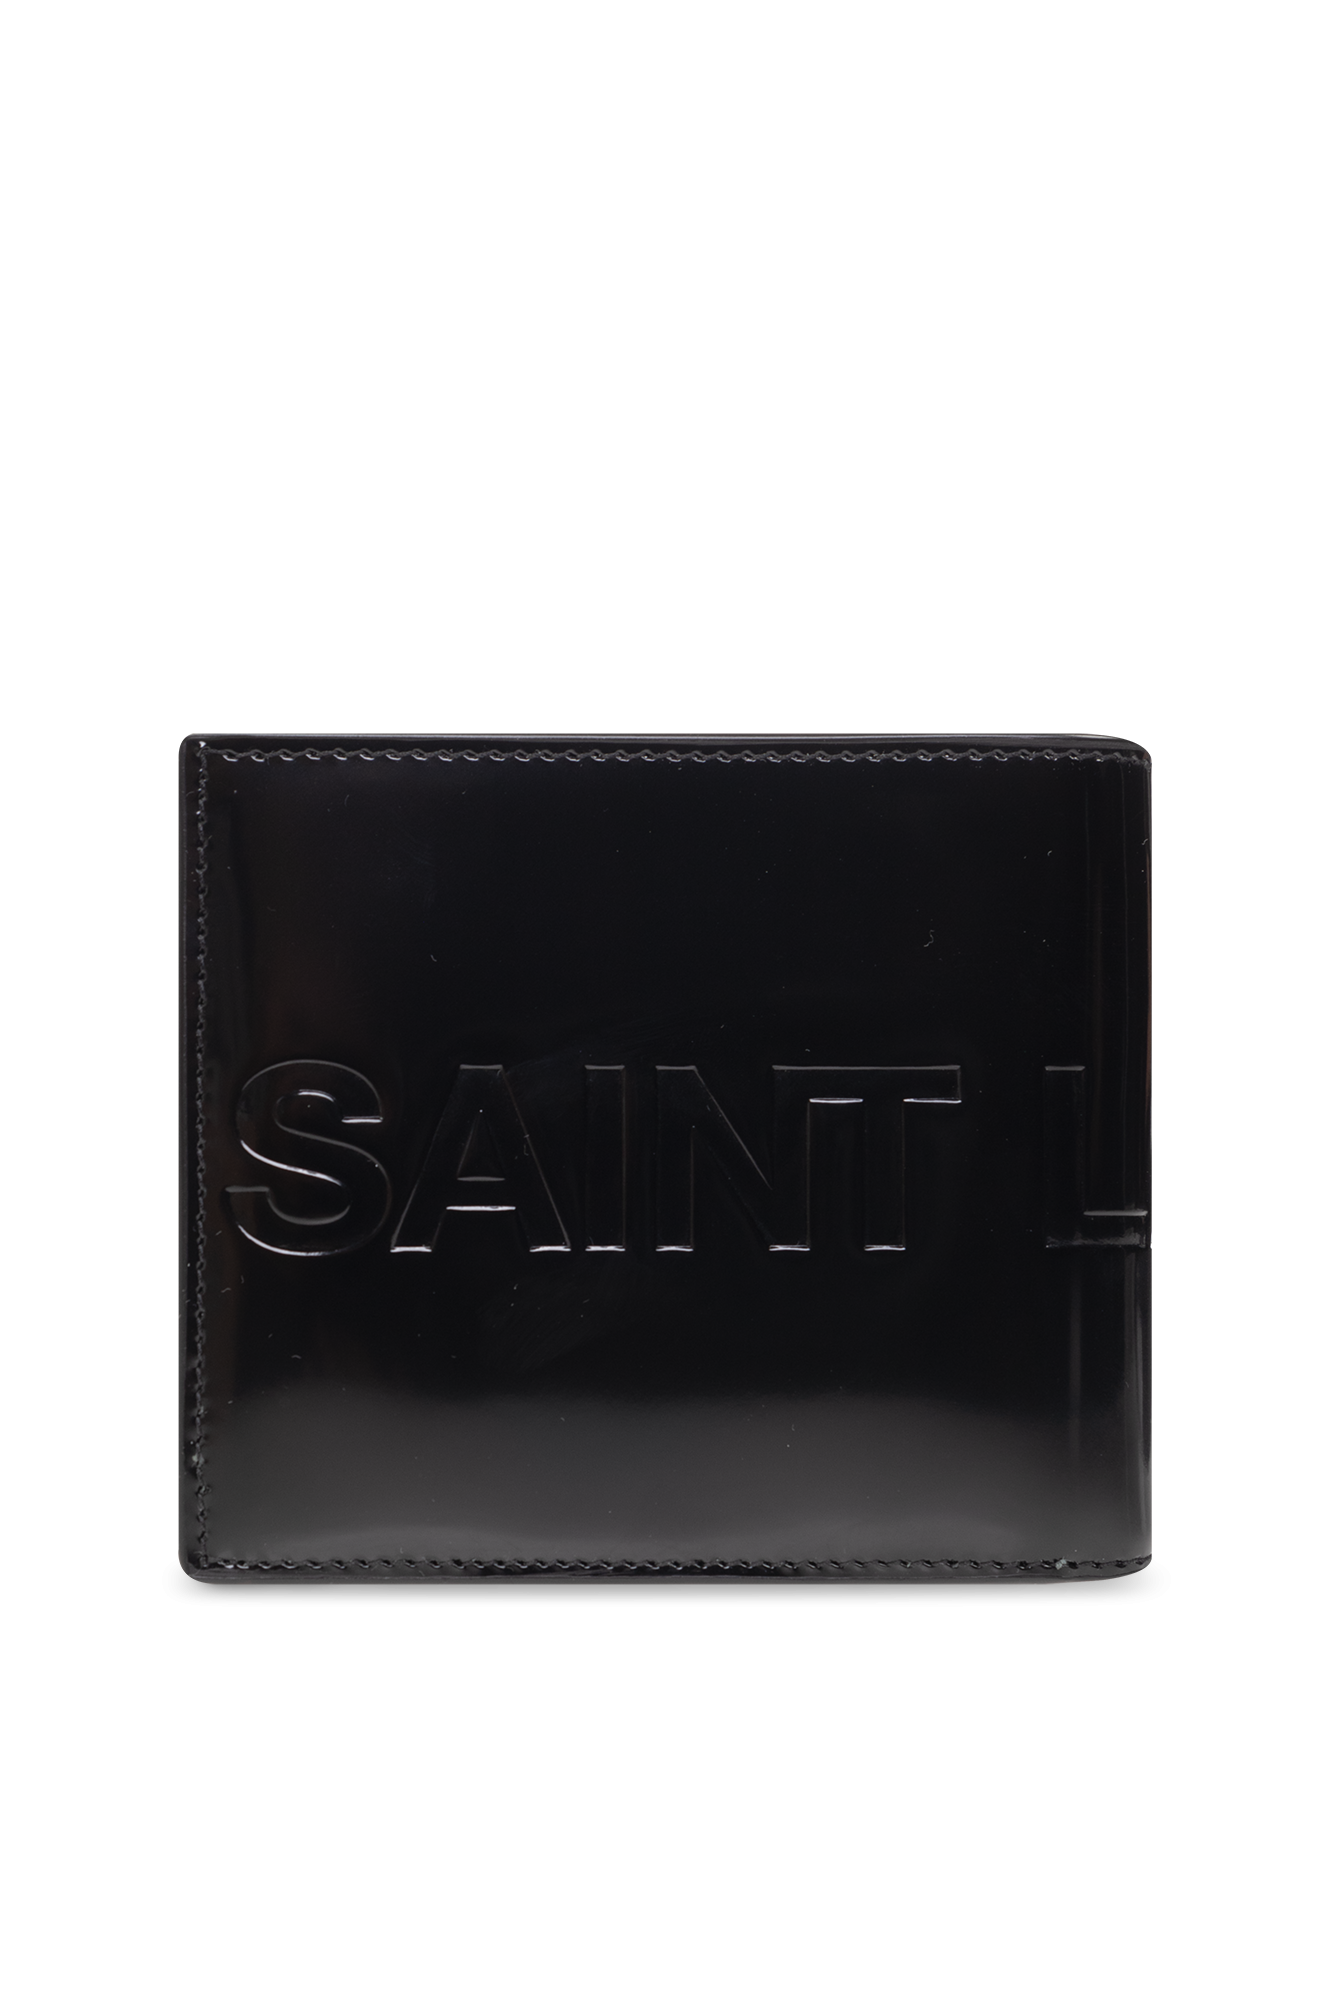 Wallet Saint Laurent Men Color Black